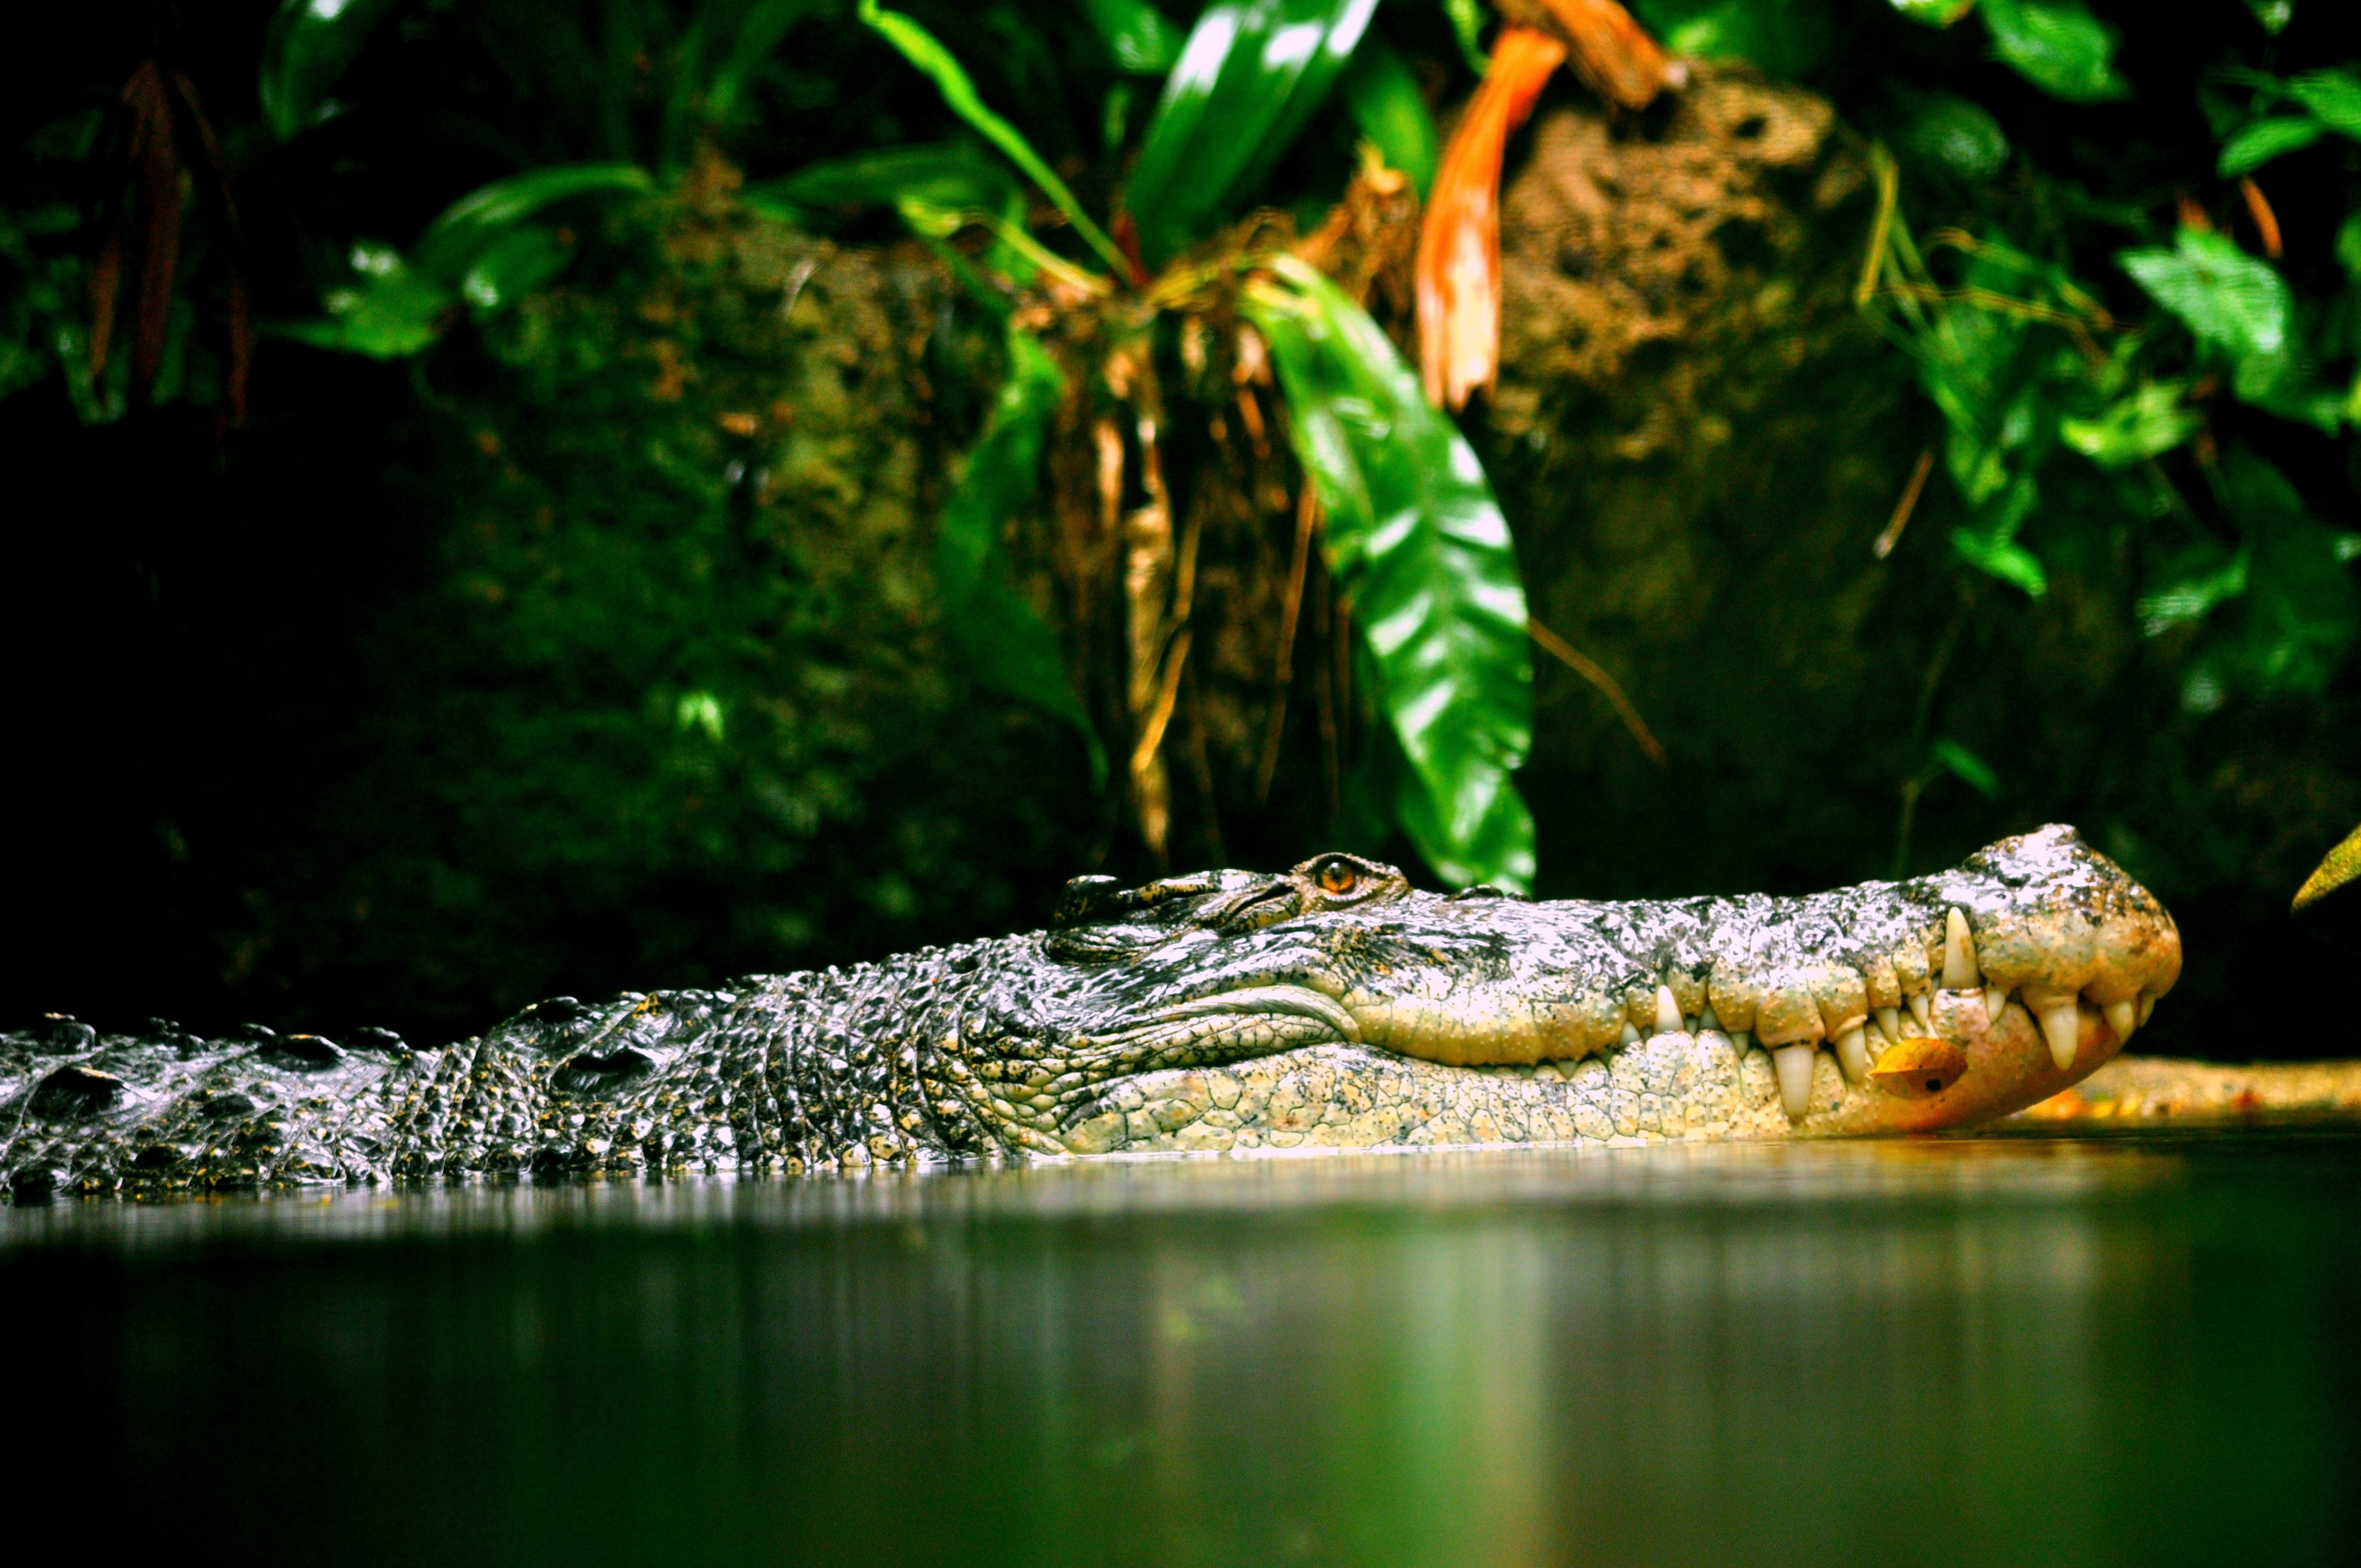 Croc, Reptile, Crocodile, Carnivore, reptile, one animal